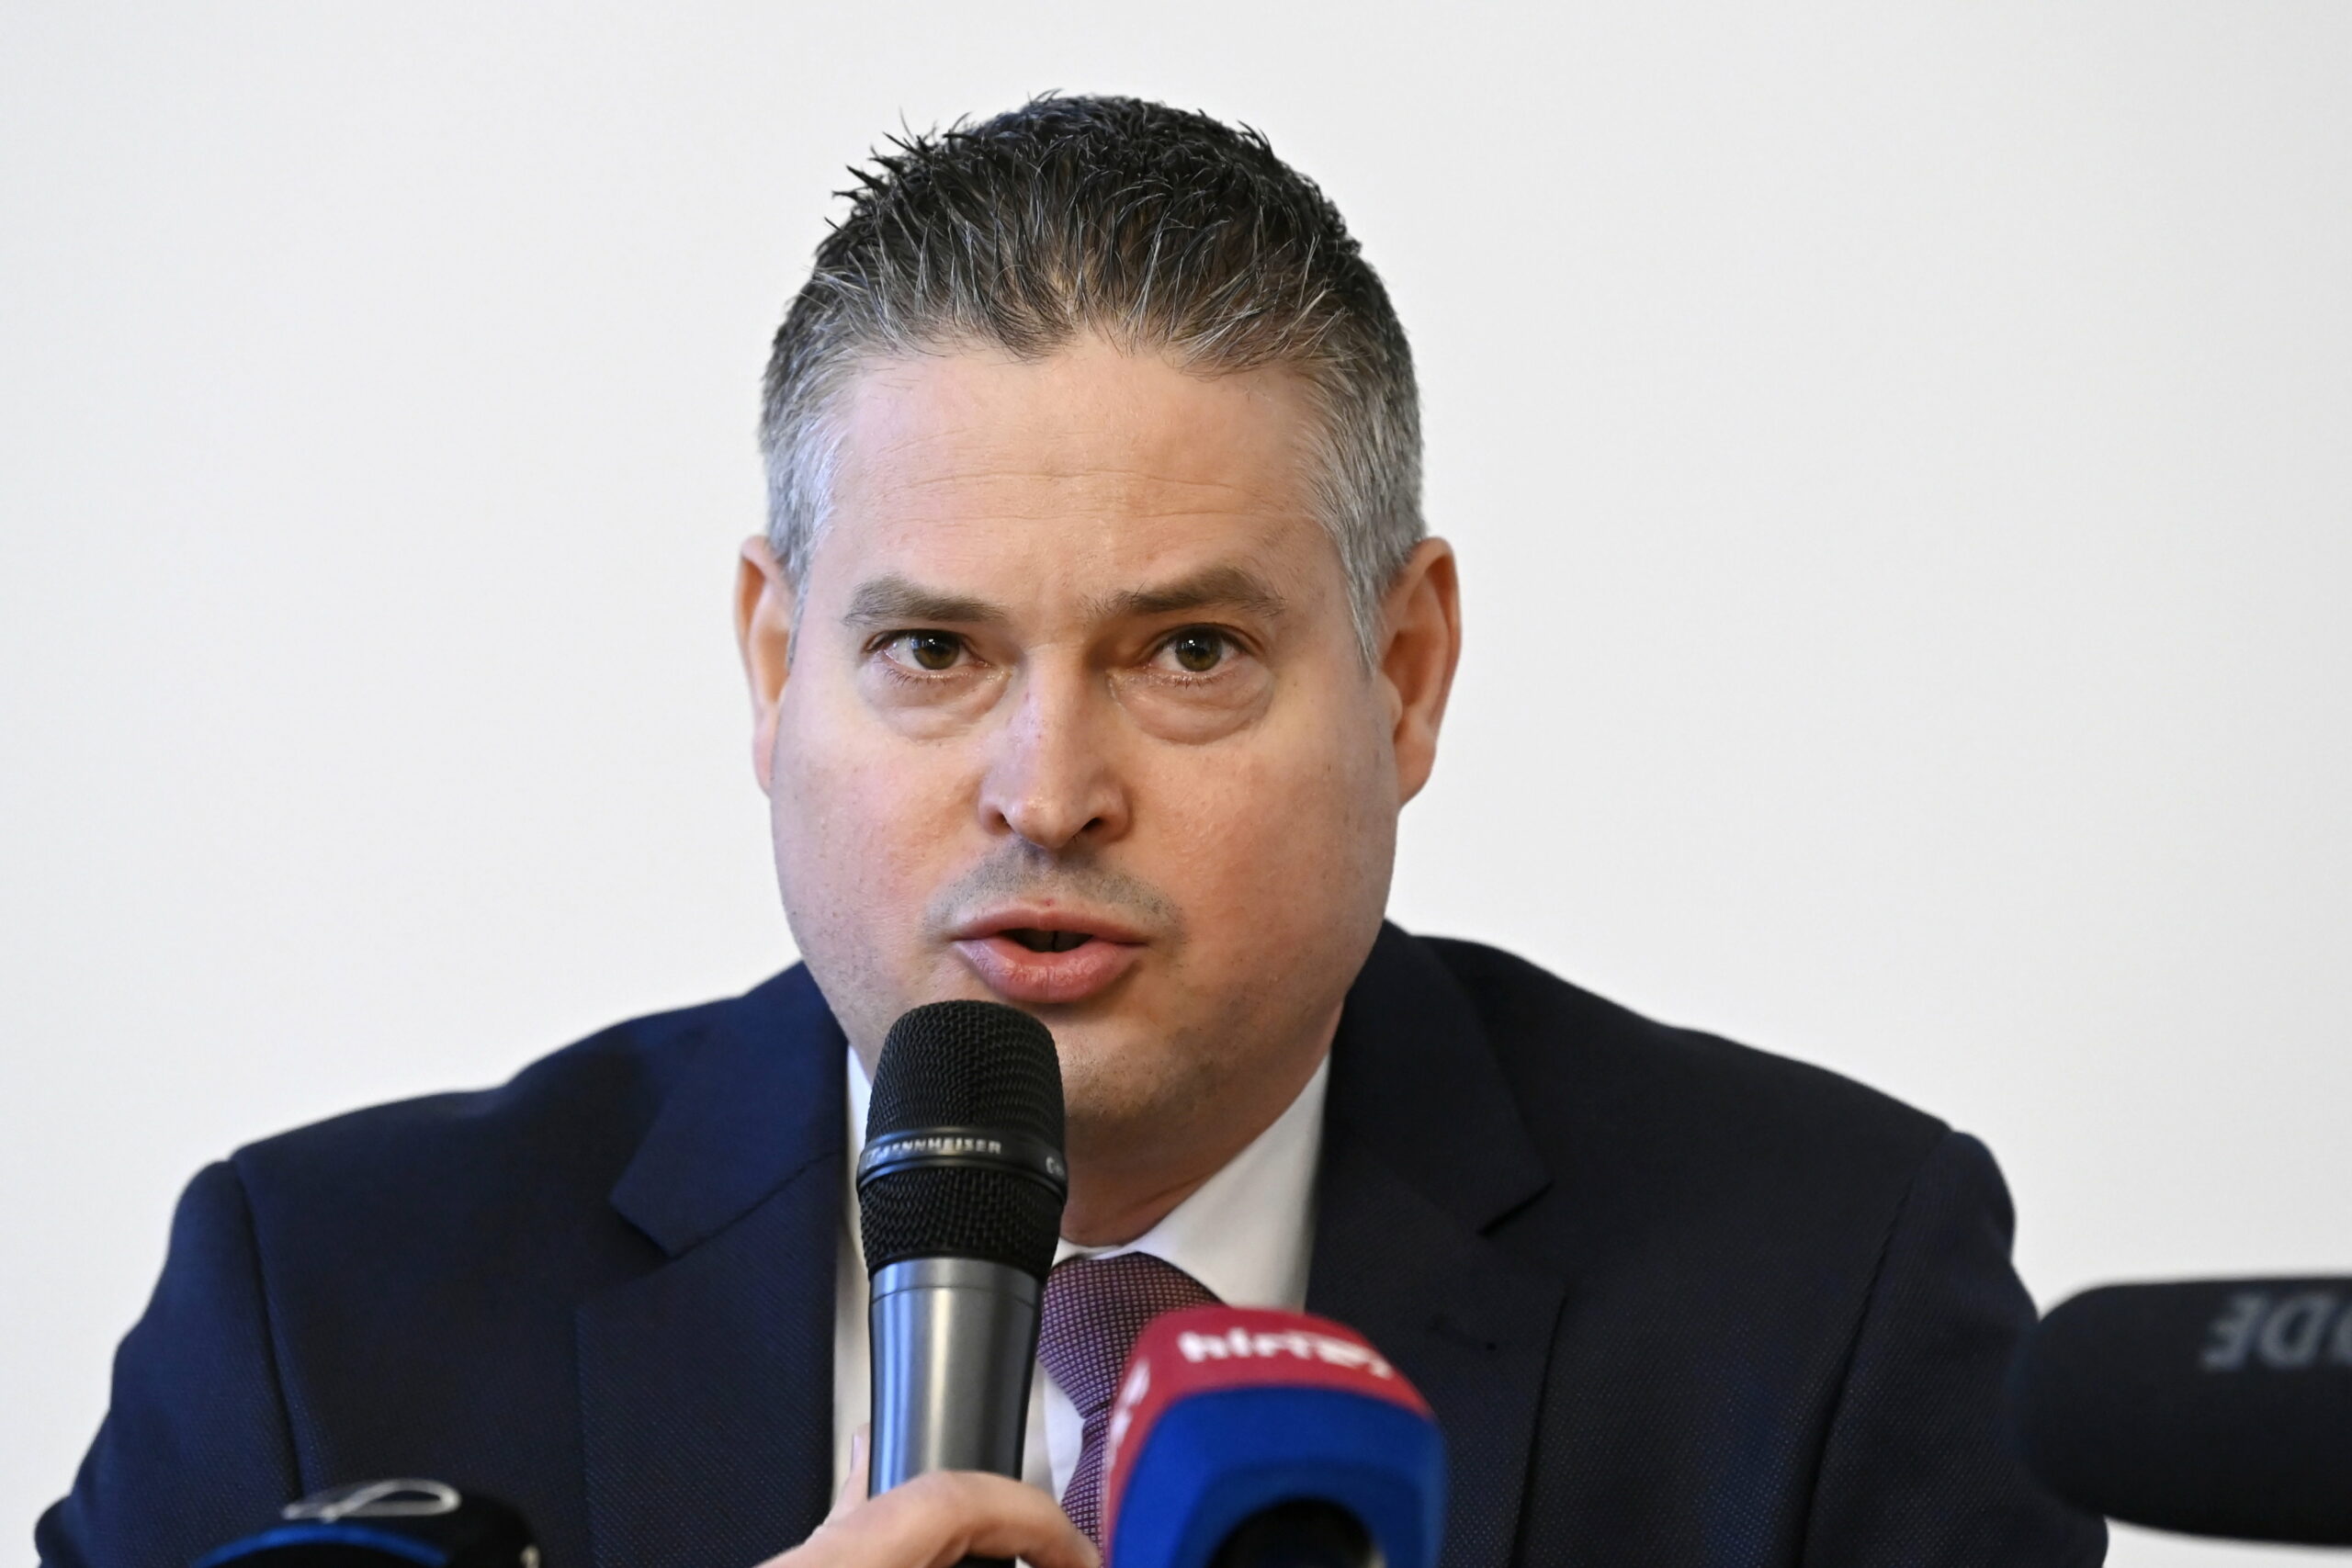 A budapesti főispán valótlanul állította, hogy az óvodákban „LMBTQ-propaganda” zajlik – bocsánatot kell kérnie Pikó András önkormányzatától